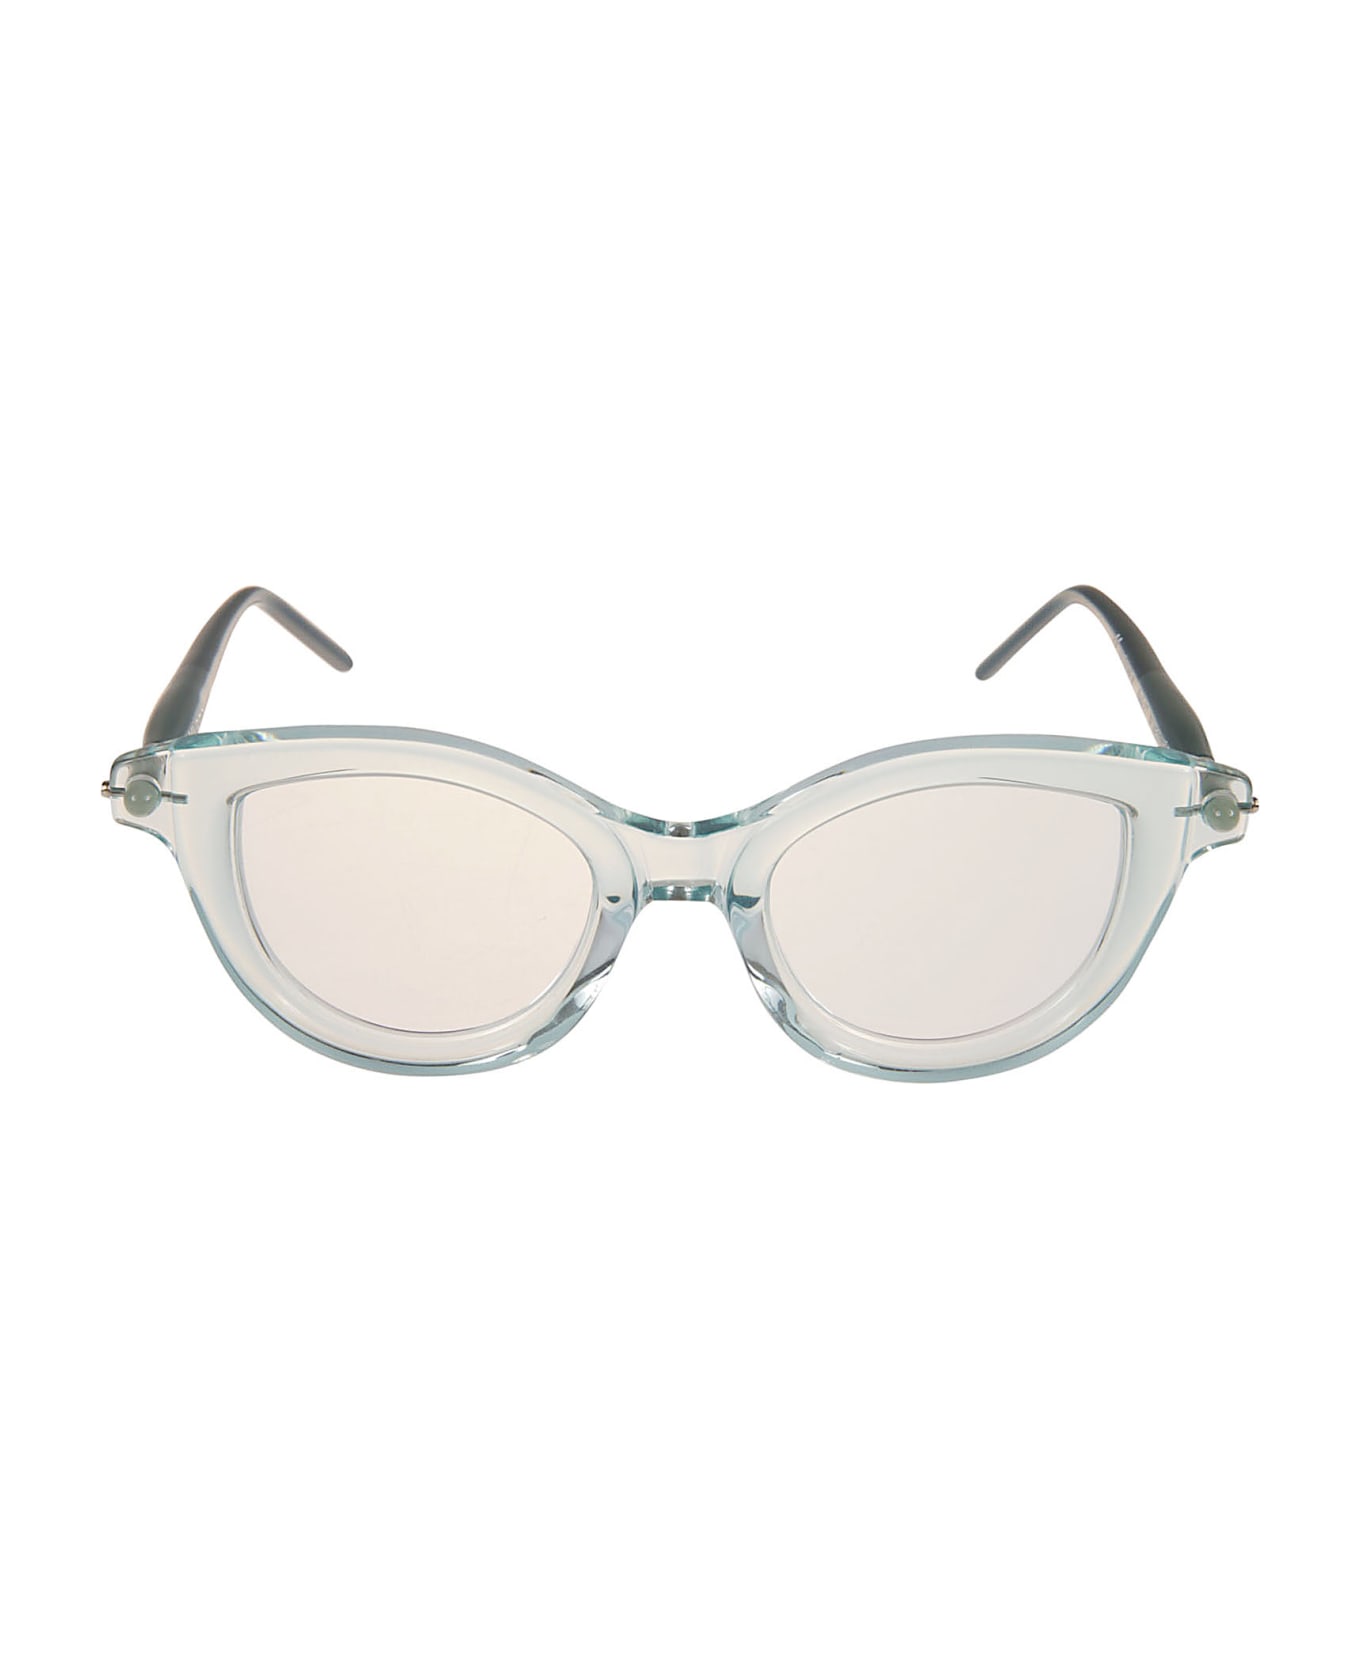 Kuboraum P7 Glasses - Green アイウェア